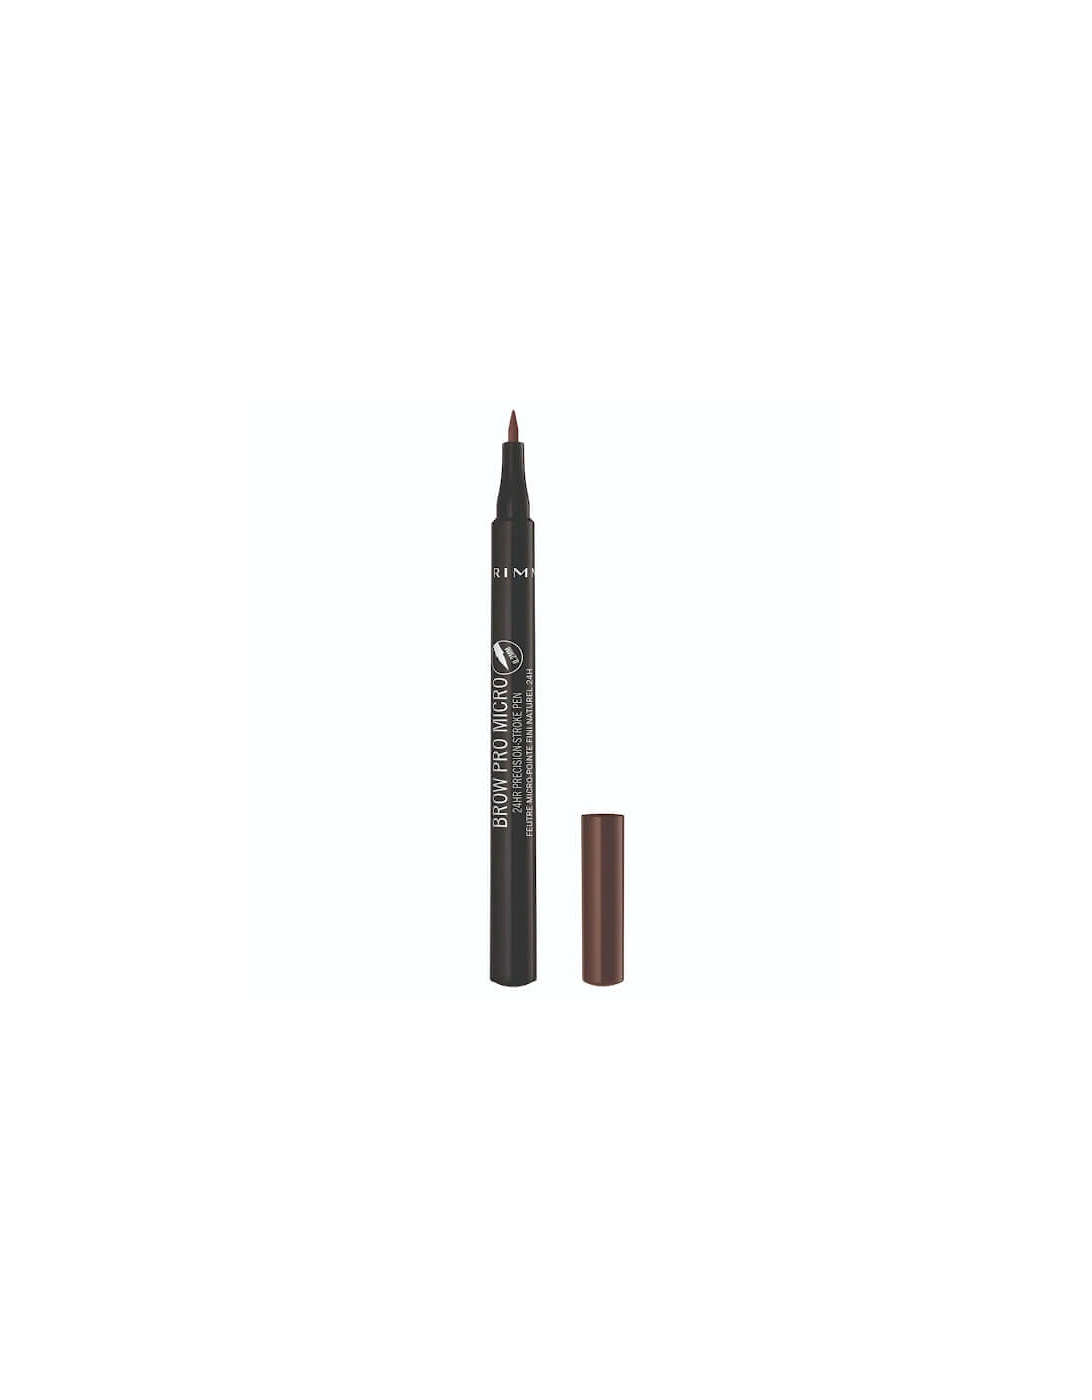 Brow Pro Micro 24HR Precision-Stroke Pen - 003 Soft Brown, 2 of 1